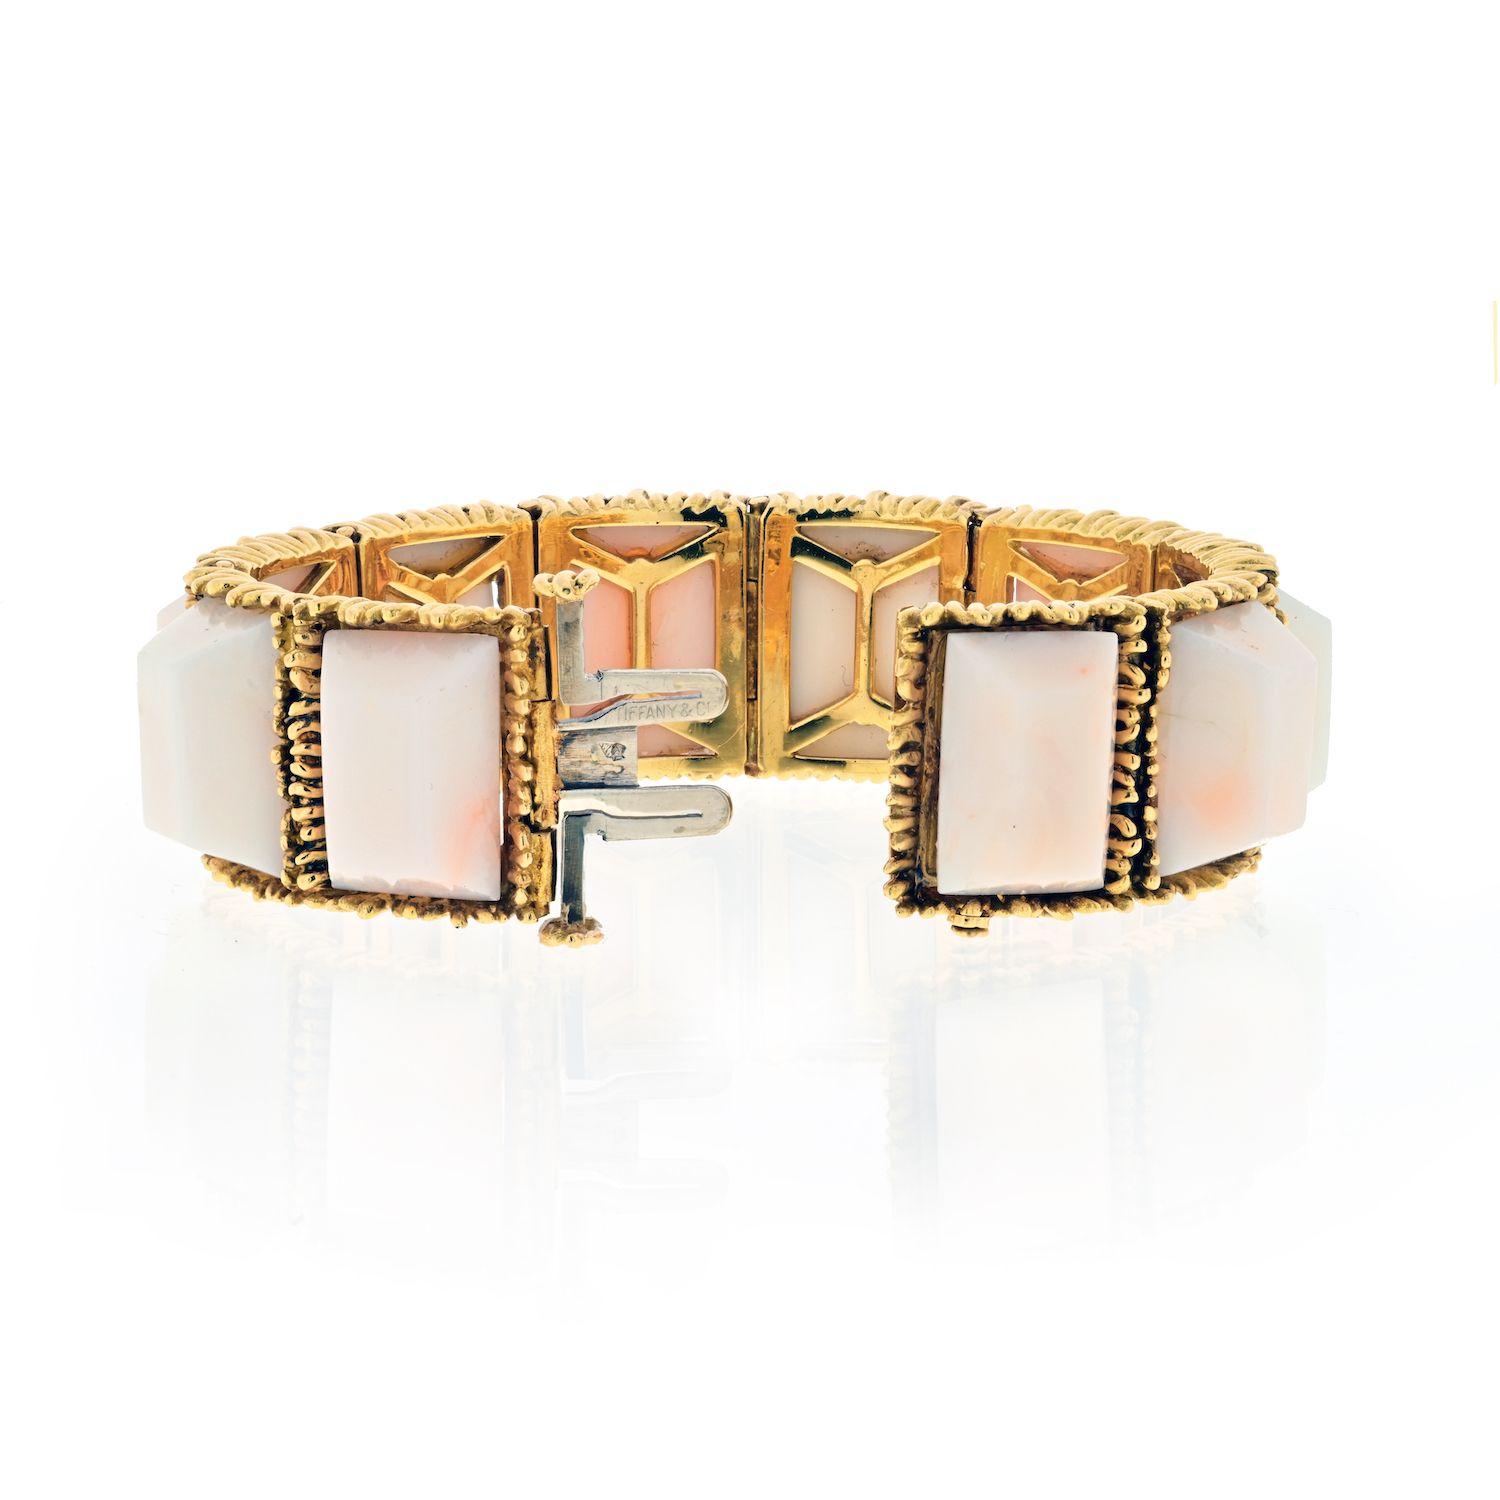 Bracelet semi-flexible vintage Tiffany & Co en corail. Conçu pour un petit poignet de 6 à 6,25 pouces. 
Réalisée en or jaune 18 carats, elle présente un ajustement semi-fixe, se porte bien et est agréable au poignet.
Les formes pyramidales de corail